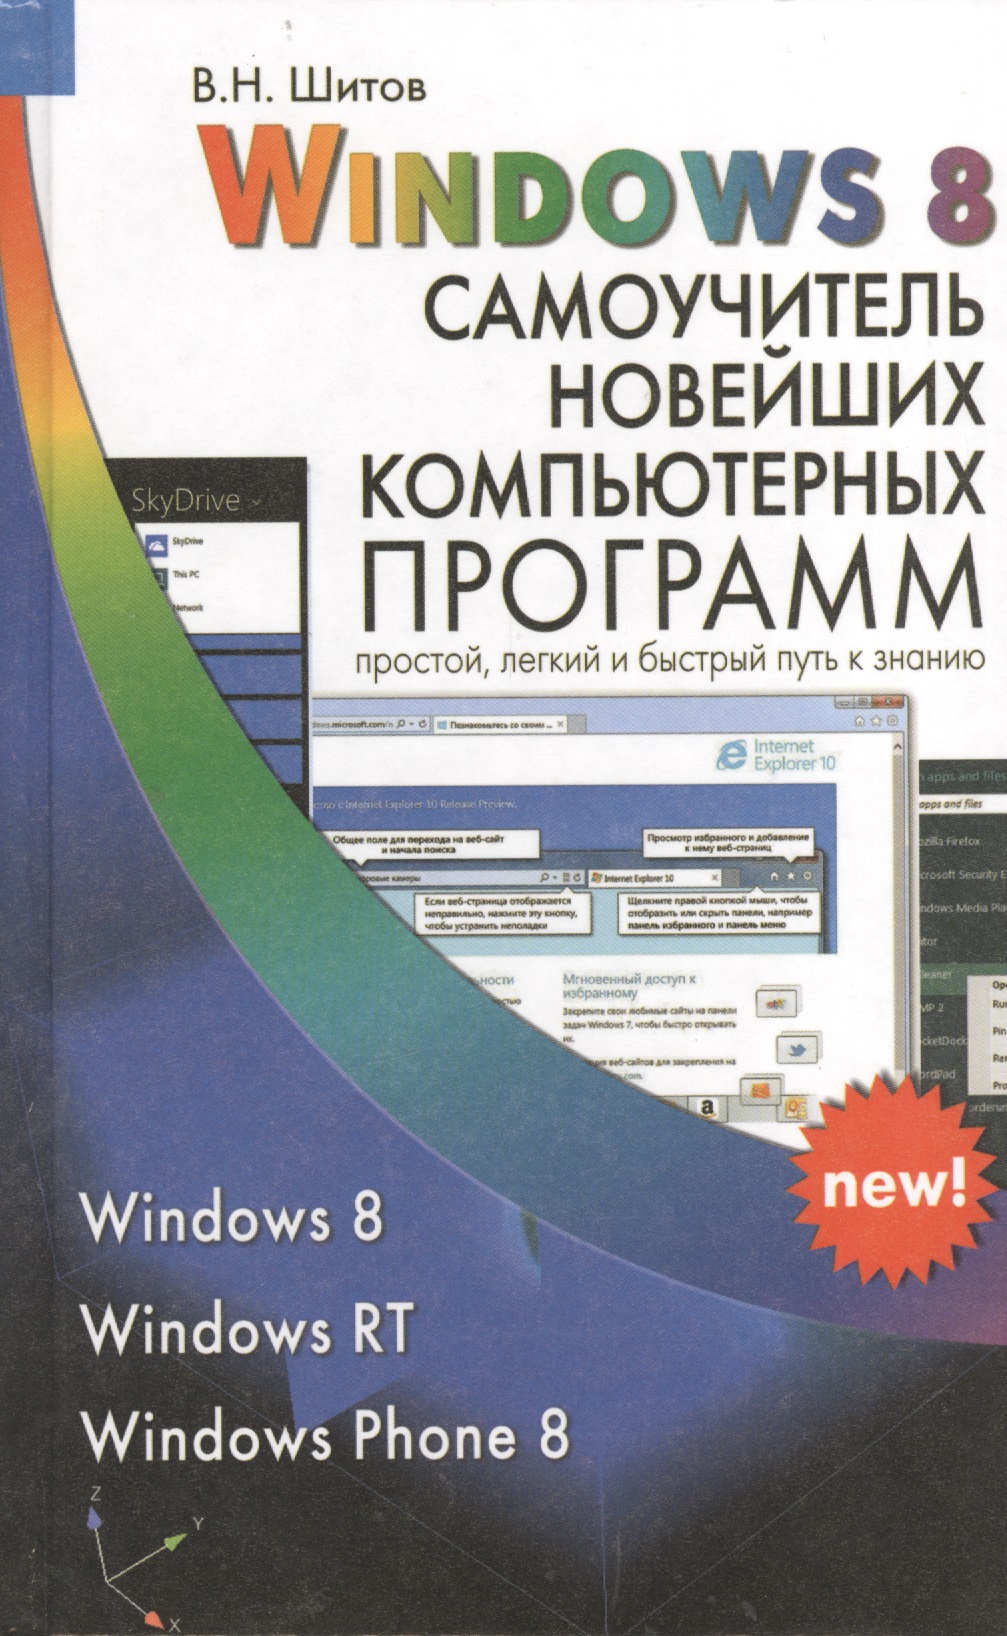 Шитов Виктор Николаевич Windows 8 Самоучитель новейших компьютерных программ (Шитов) шитов виктор николаевич новейший самоучитель работы на компьютере